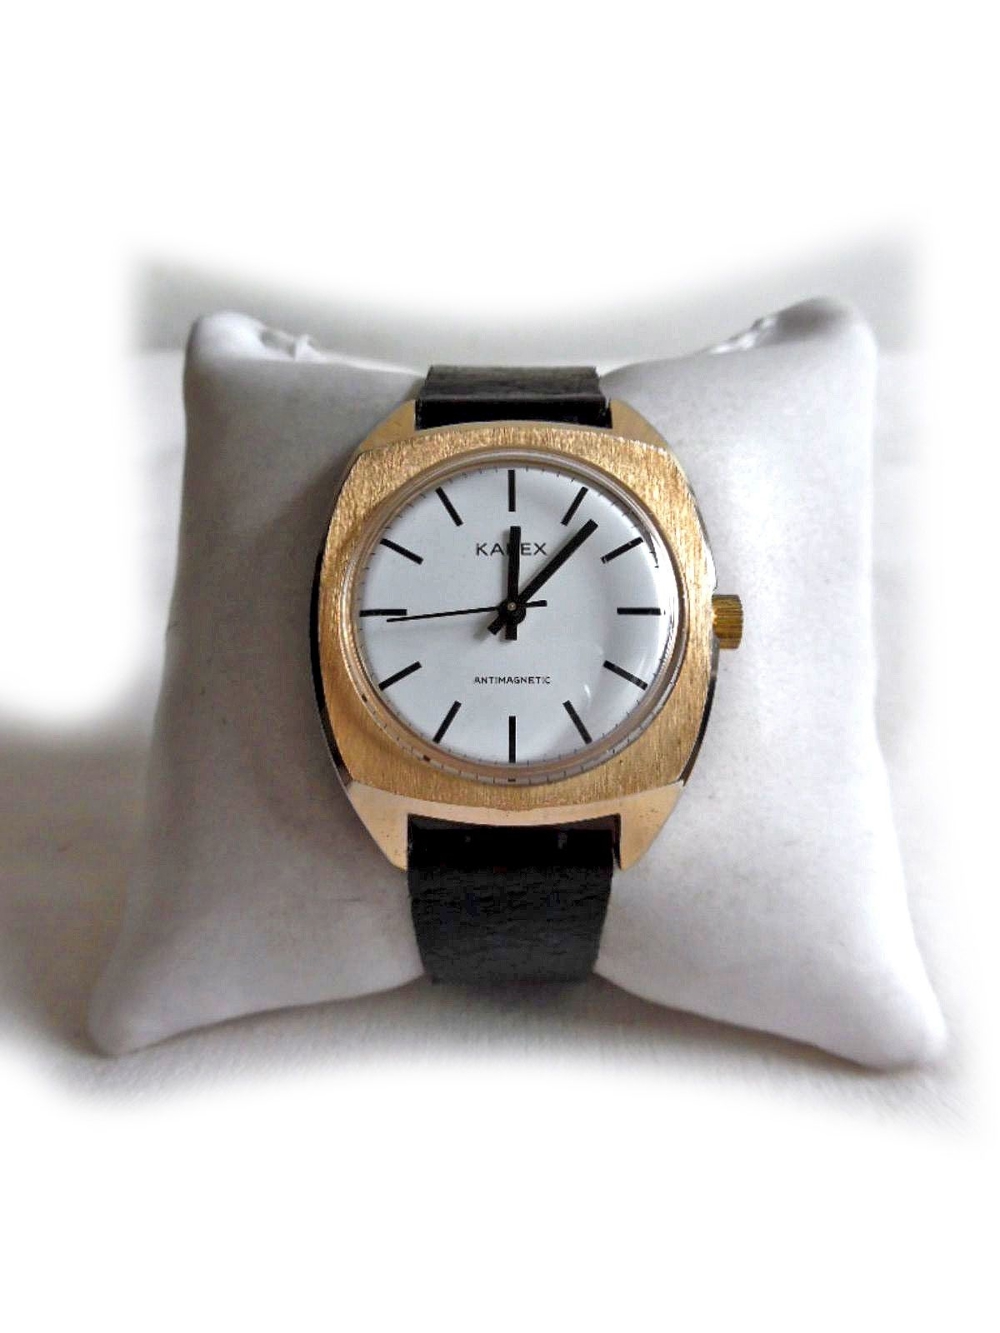 Große Armbanduhr von Karex